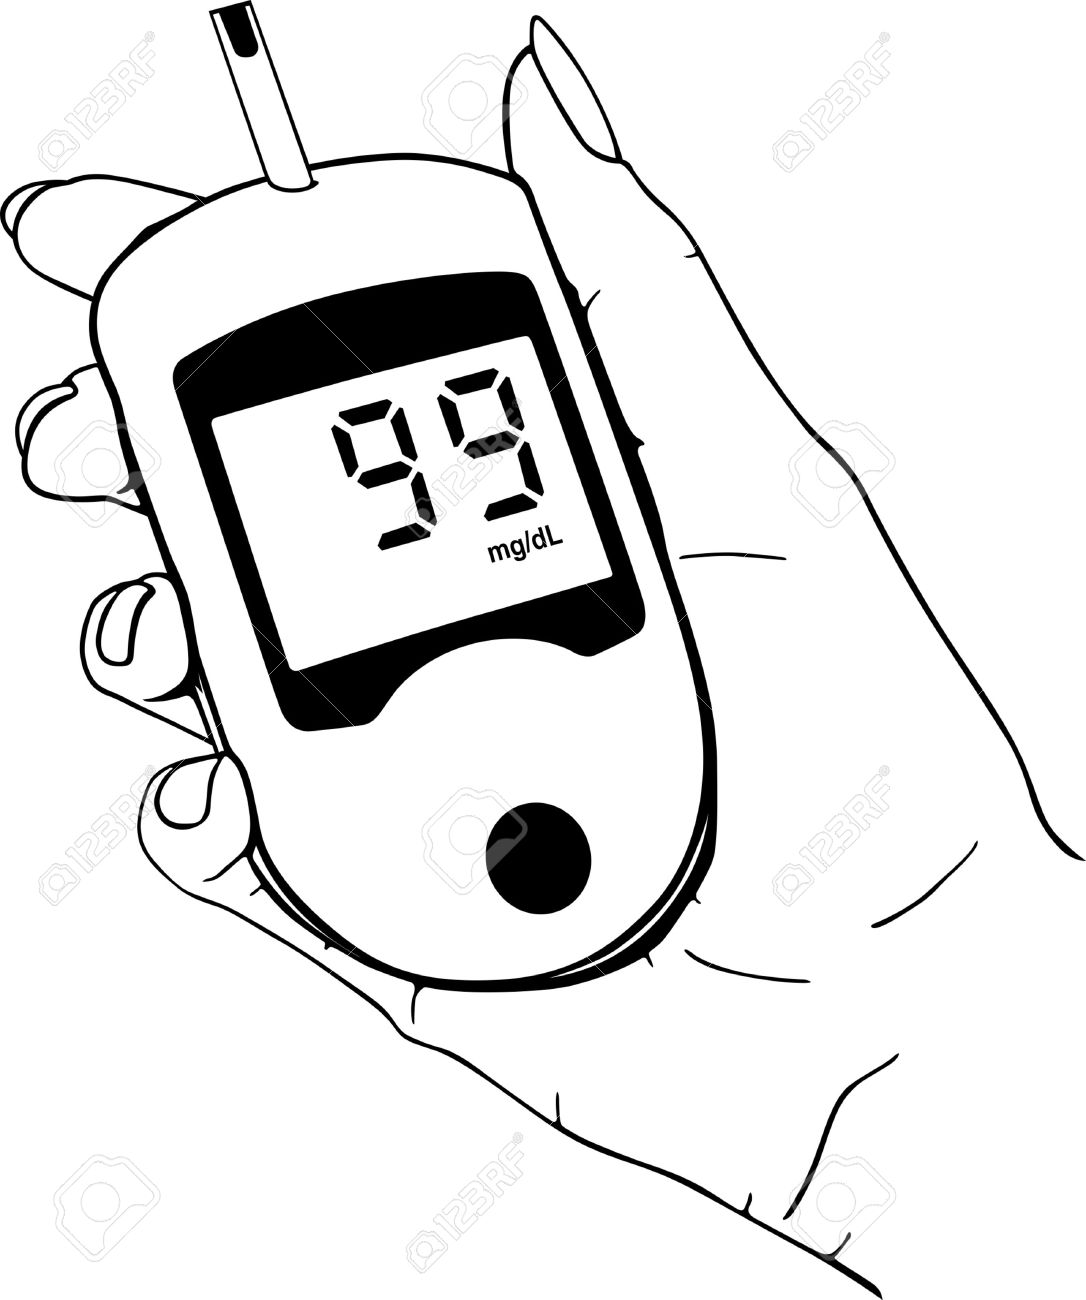 diabetes clipart - Diabetes Clipart